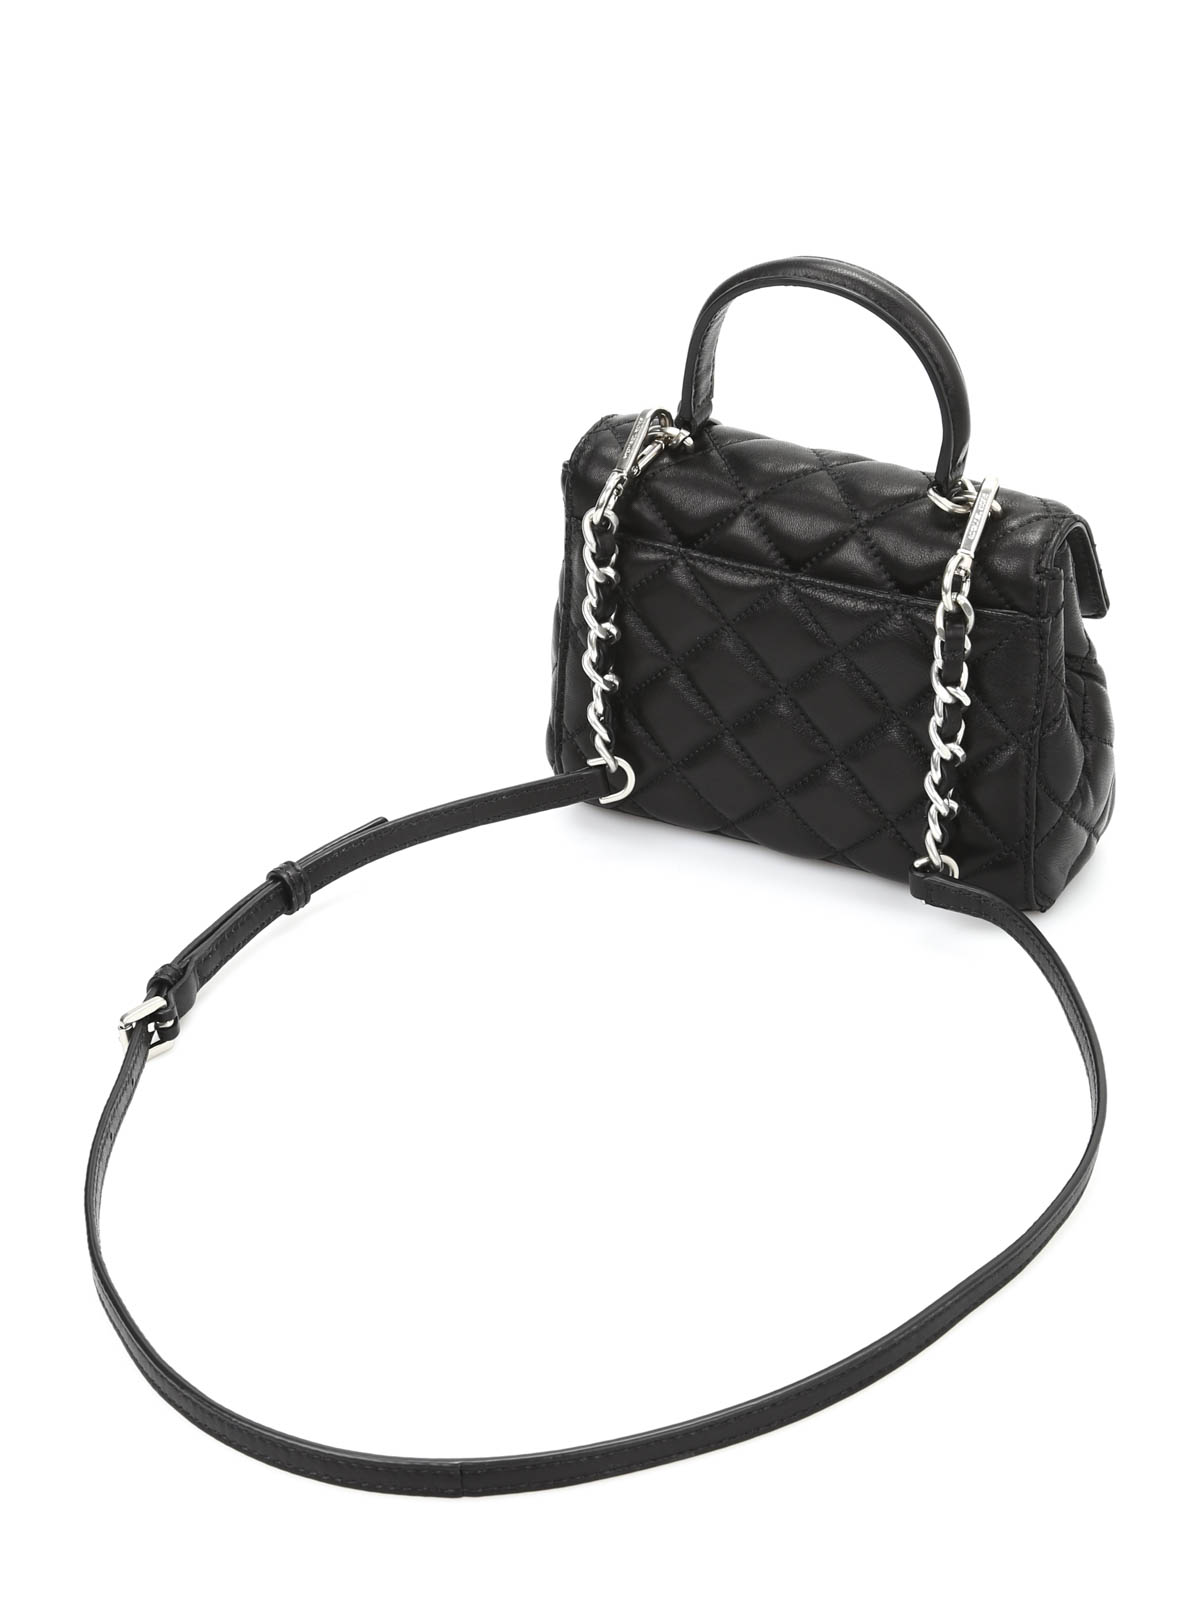 Michael Kors Ava Small Crossbody Bags & Handbags for Women for